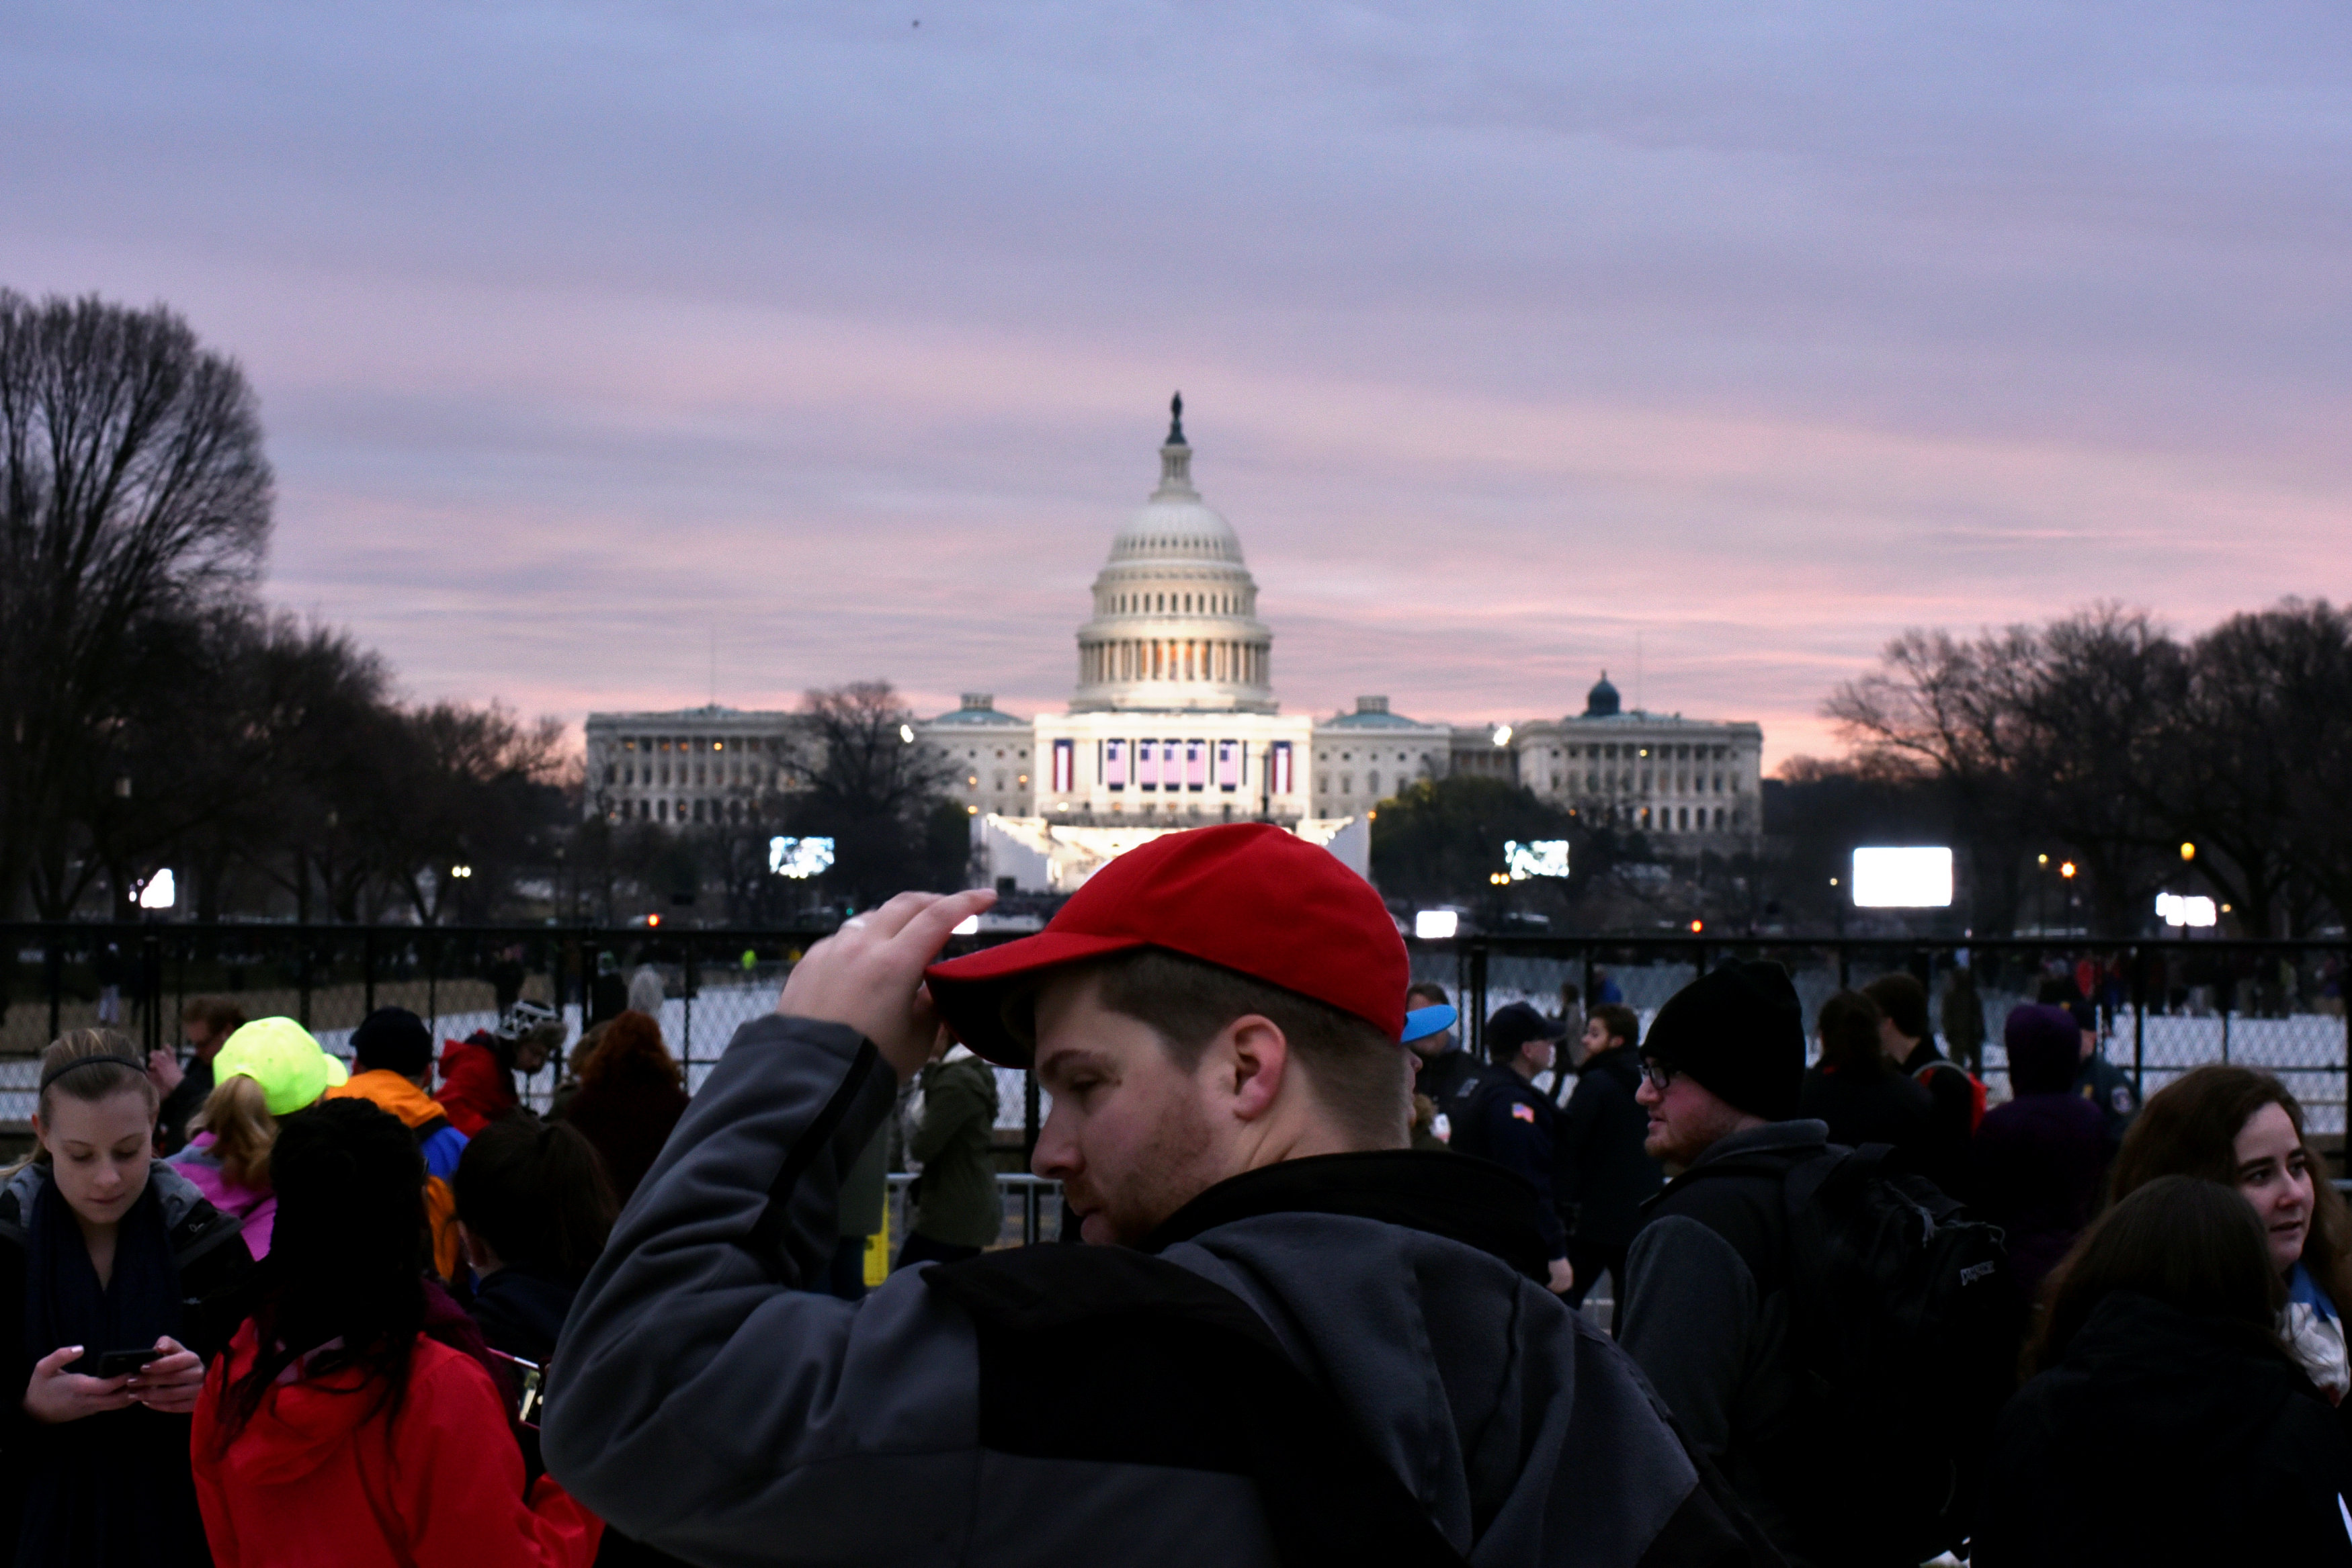 أحد الشباب المشاركين فى حفل تنصيب دونالد ترامب يرتدى قبعة حمراء